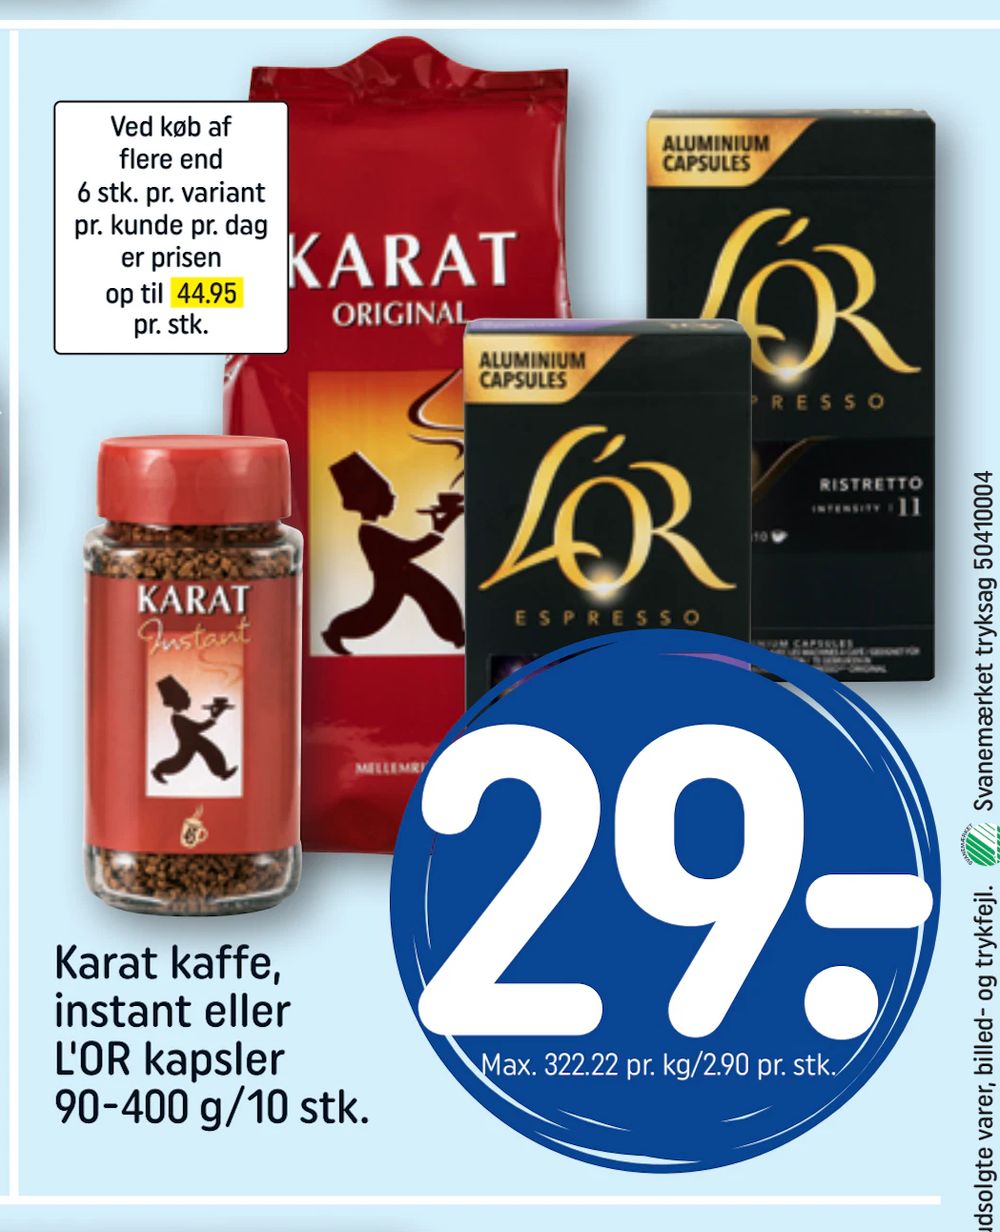 Tilbud på Karat kaffe, instant eller L'OR kapsler 90-400 g/10 stk. fra REMA 1000 til 29 kr.